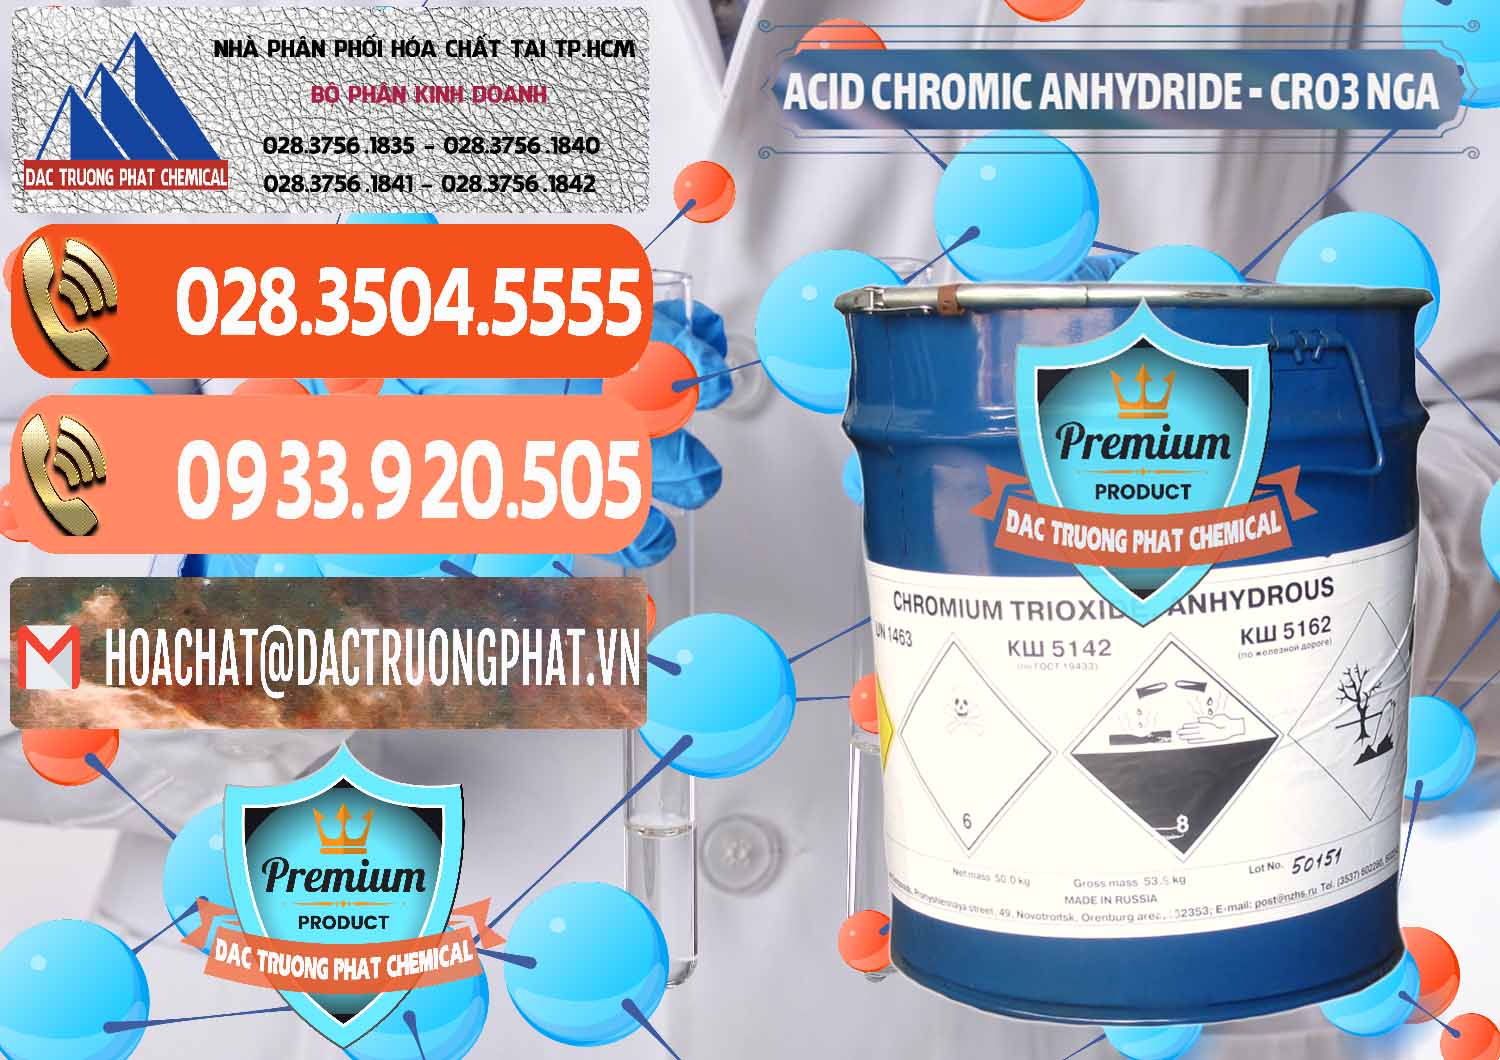 Nơi bán ( cung ứng ) Acid Chromic Anhydride - Cromic CRO3 Nga Russia - 0006 - Công ty phân phối & cung cấp hóa chất tại TP.HCM - hoachatmientay.com